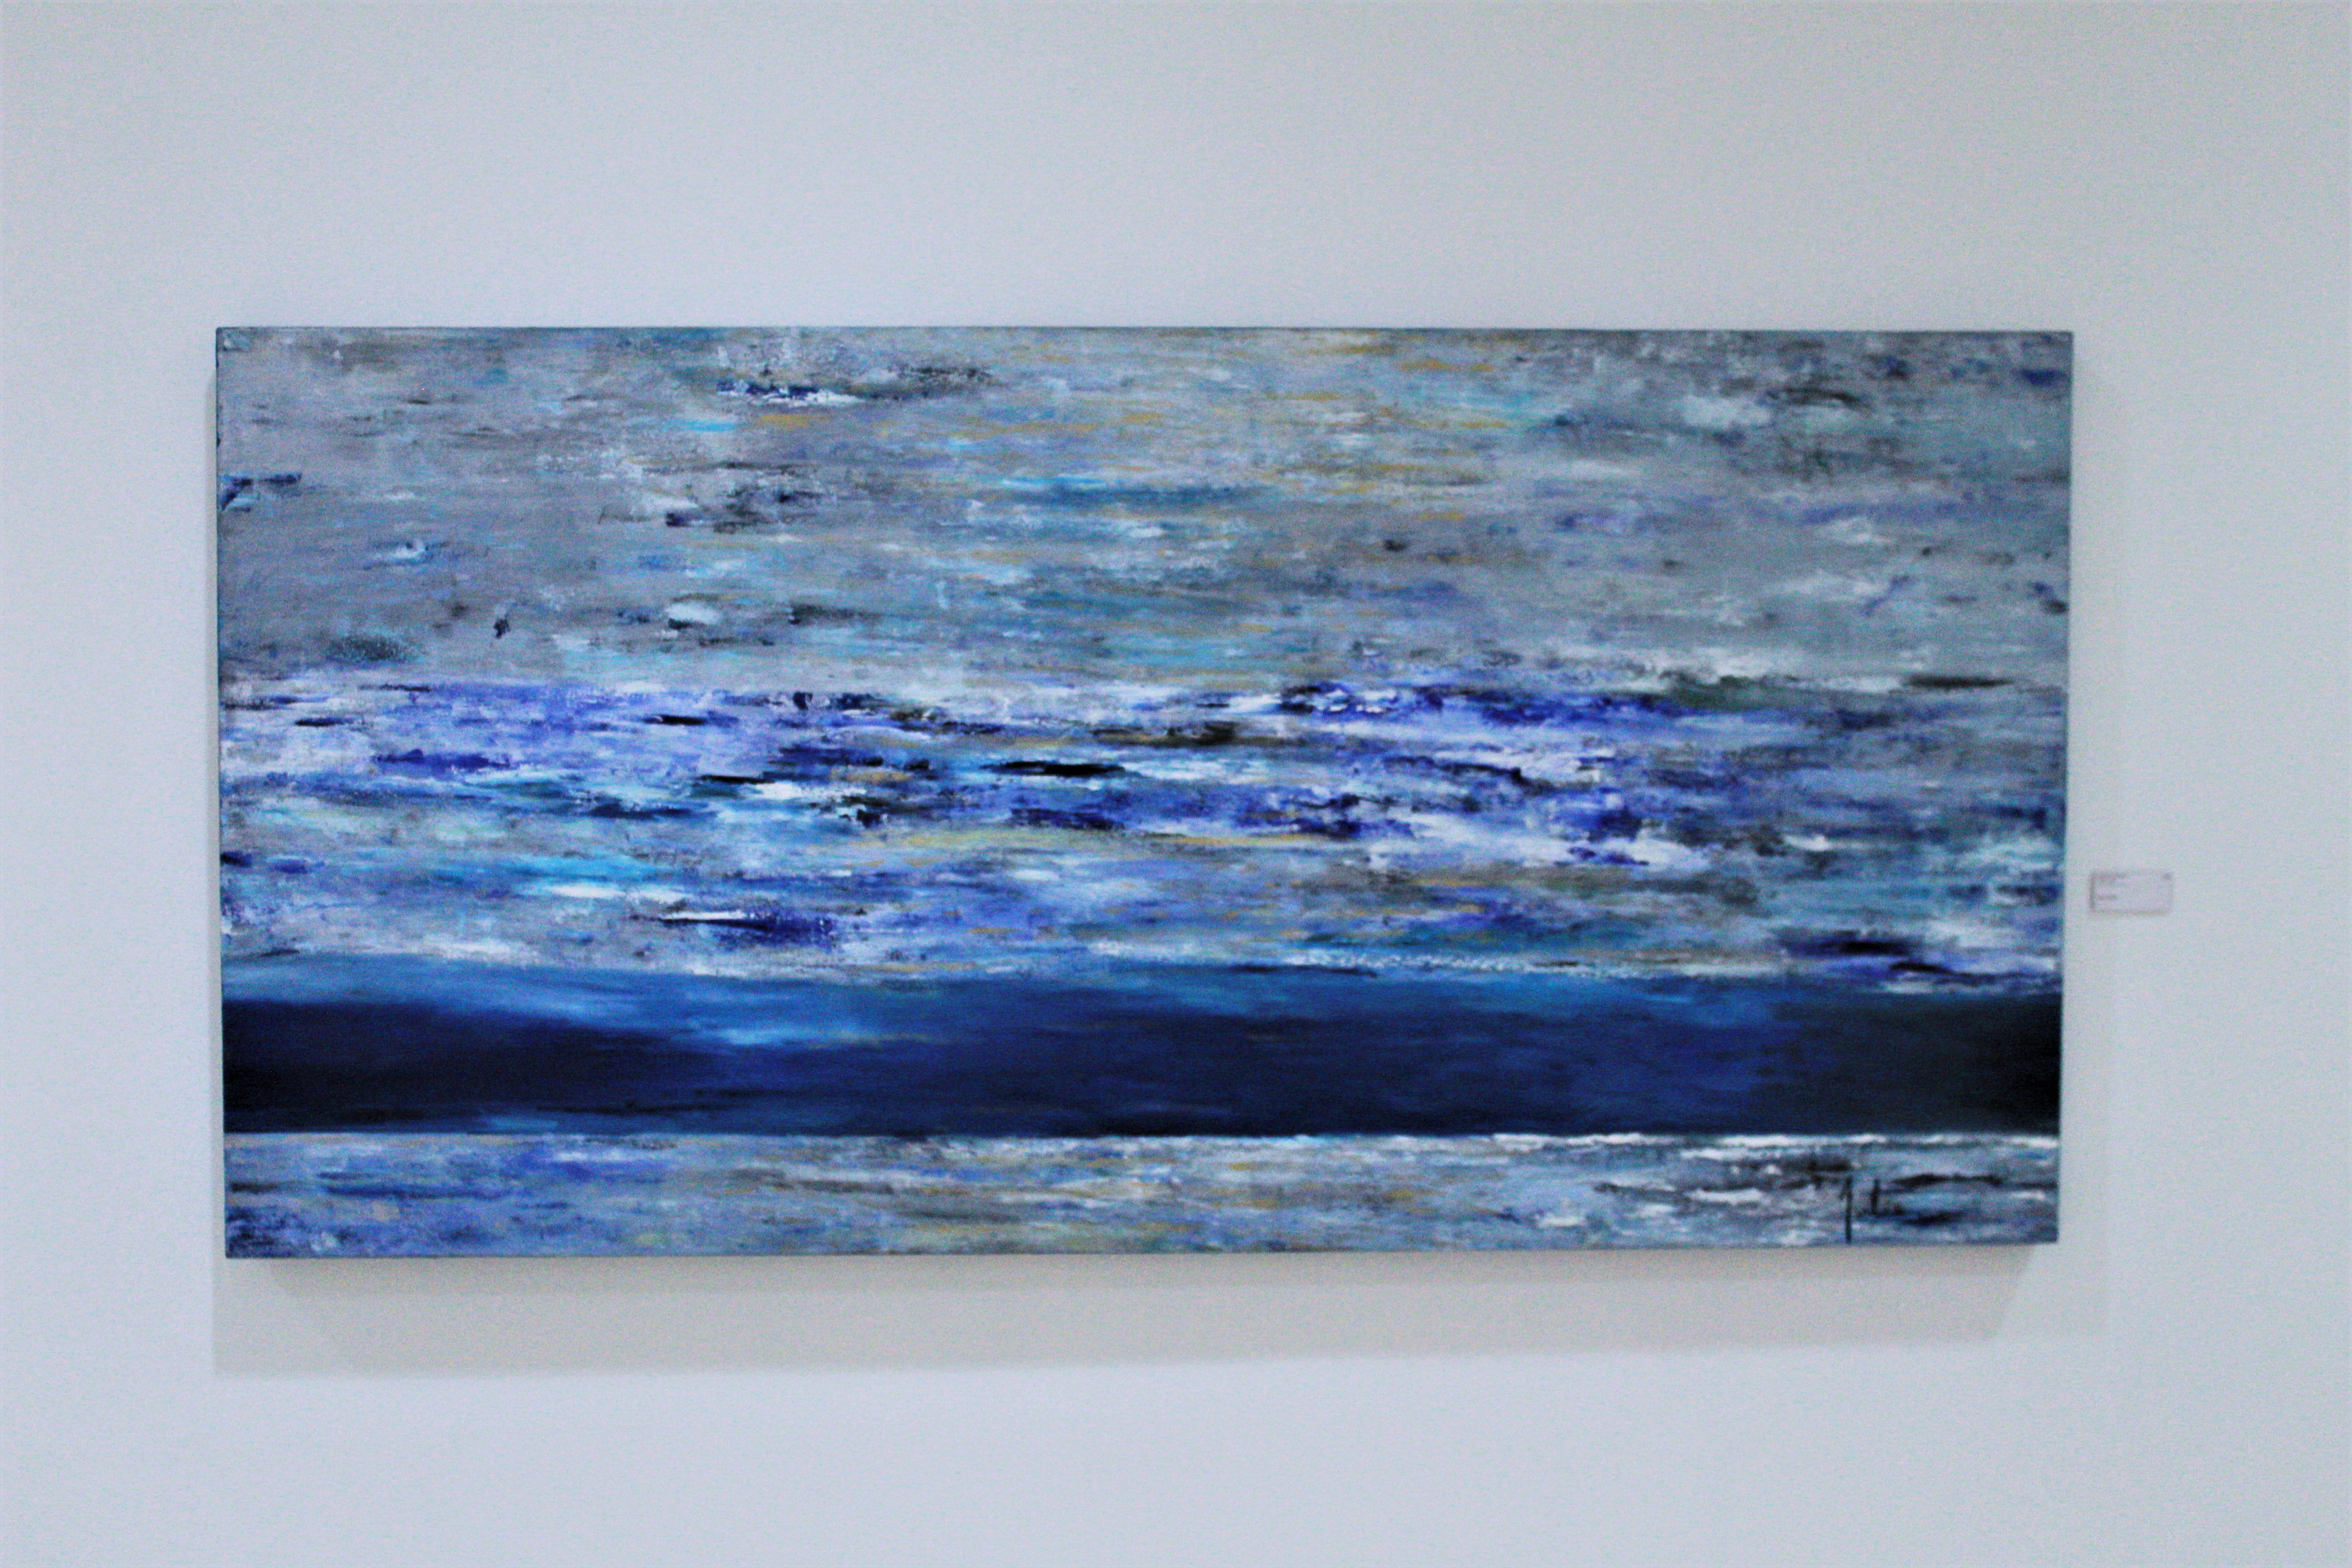 Mar azul, 2014, Julie Sassón, óleo sobre tela, exposición colectiva "Artistas de Casa Lamm".